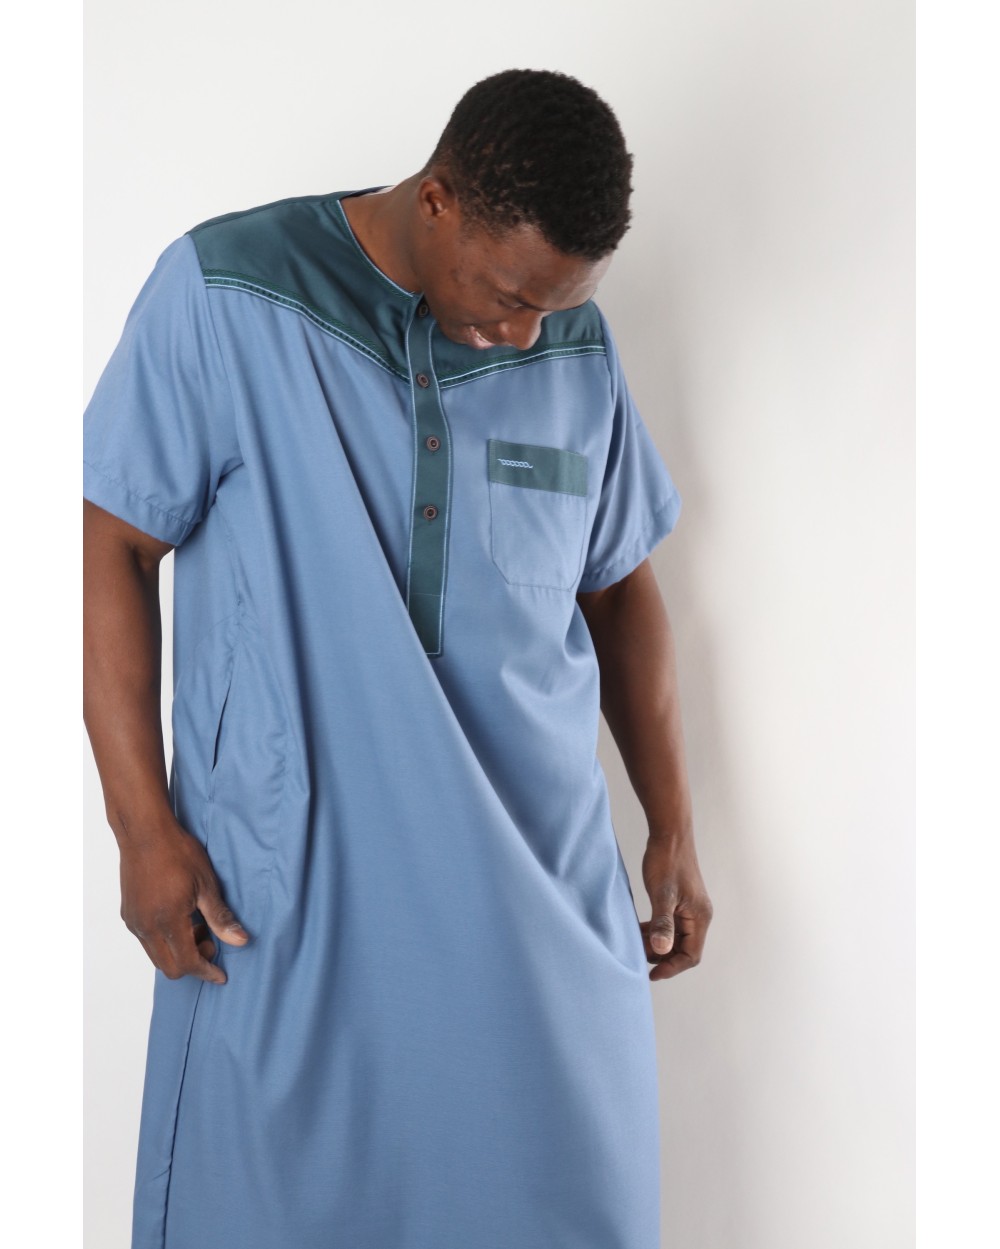 Qamis Abaya - Kamis traditionnel, vêtement islamique masculin musulman  Taille 58 (XL - 1m80/185 cm) Couleur Bleu jeans / Bleu pétrole Taille 58  (XL 